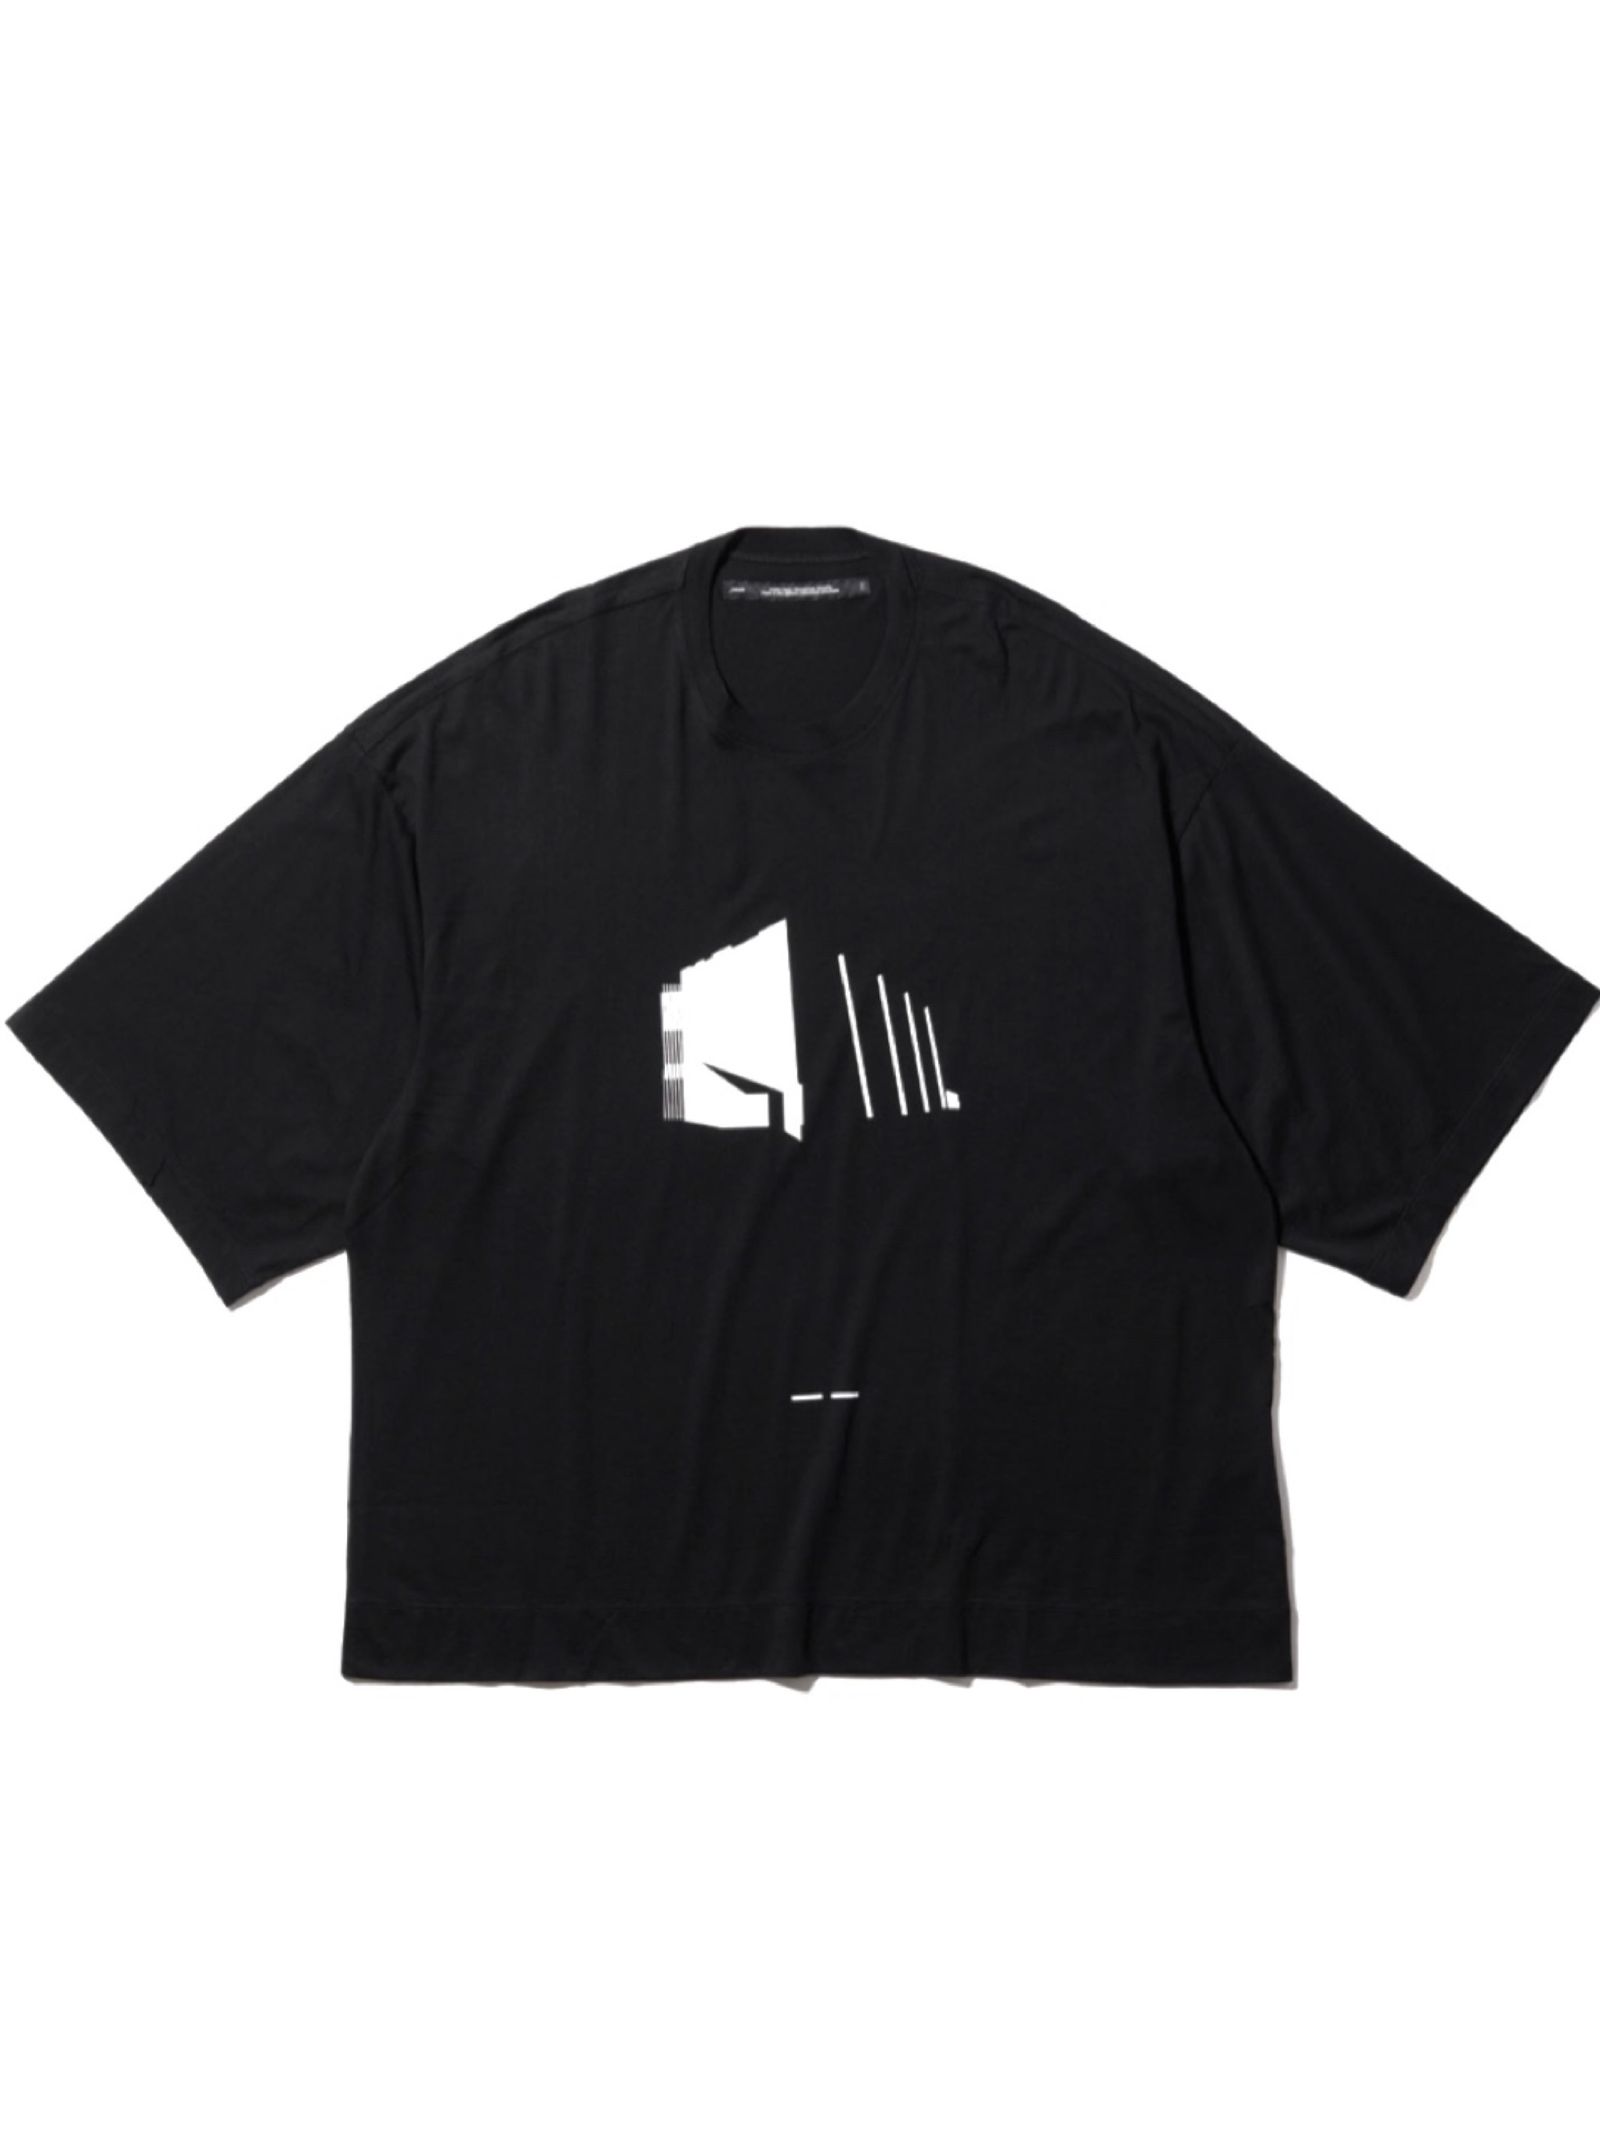 【23SS】グラフィック プリントTシャツ / CUT & SEWN FOR MALE / ブラック - ブラック - 1(S)